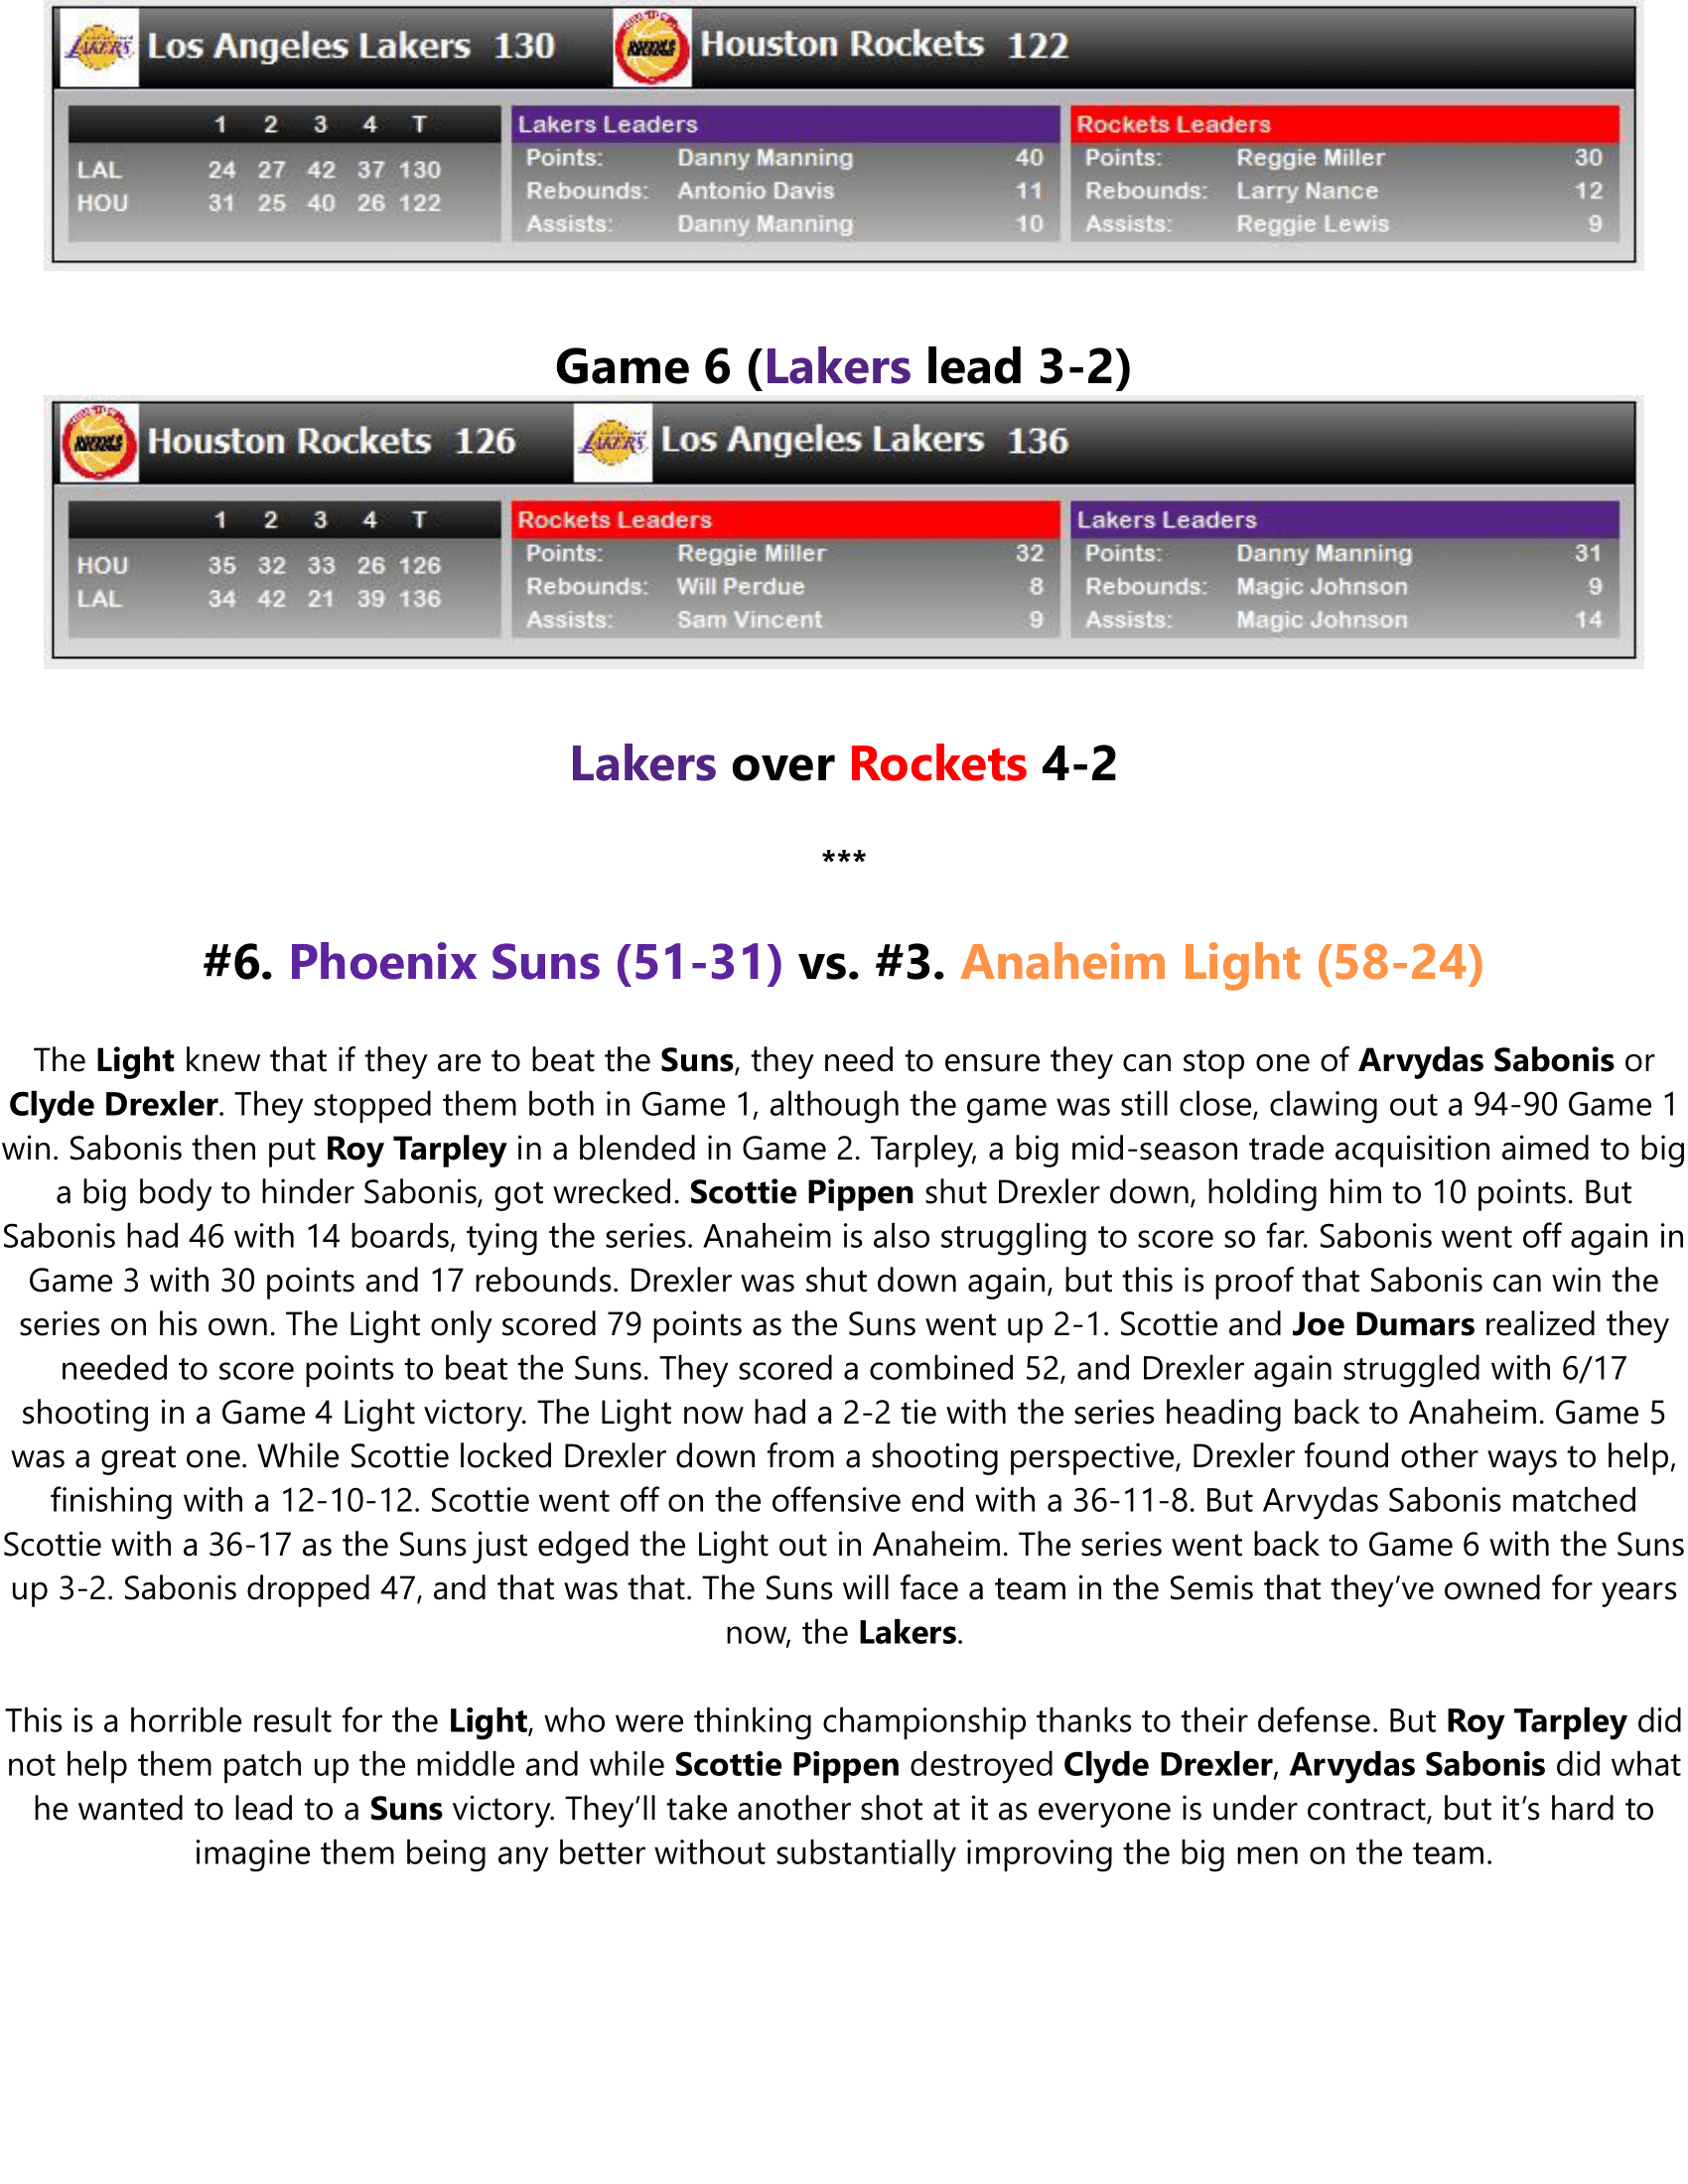 93-94-Part-5-NBA-Playoffs-06.png